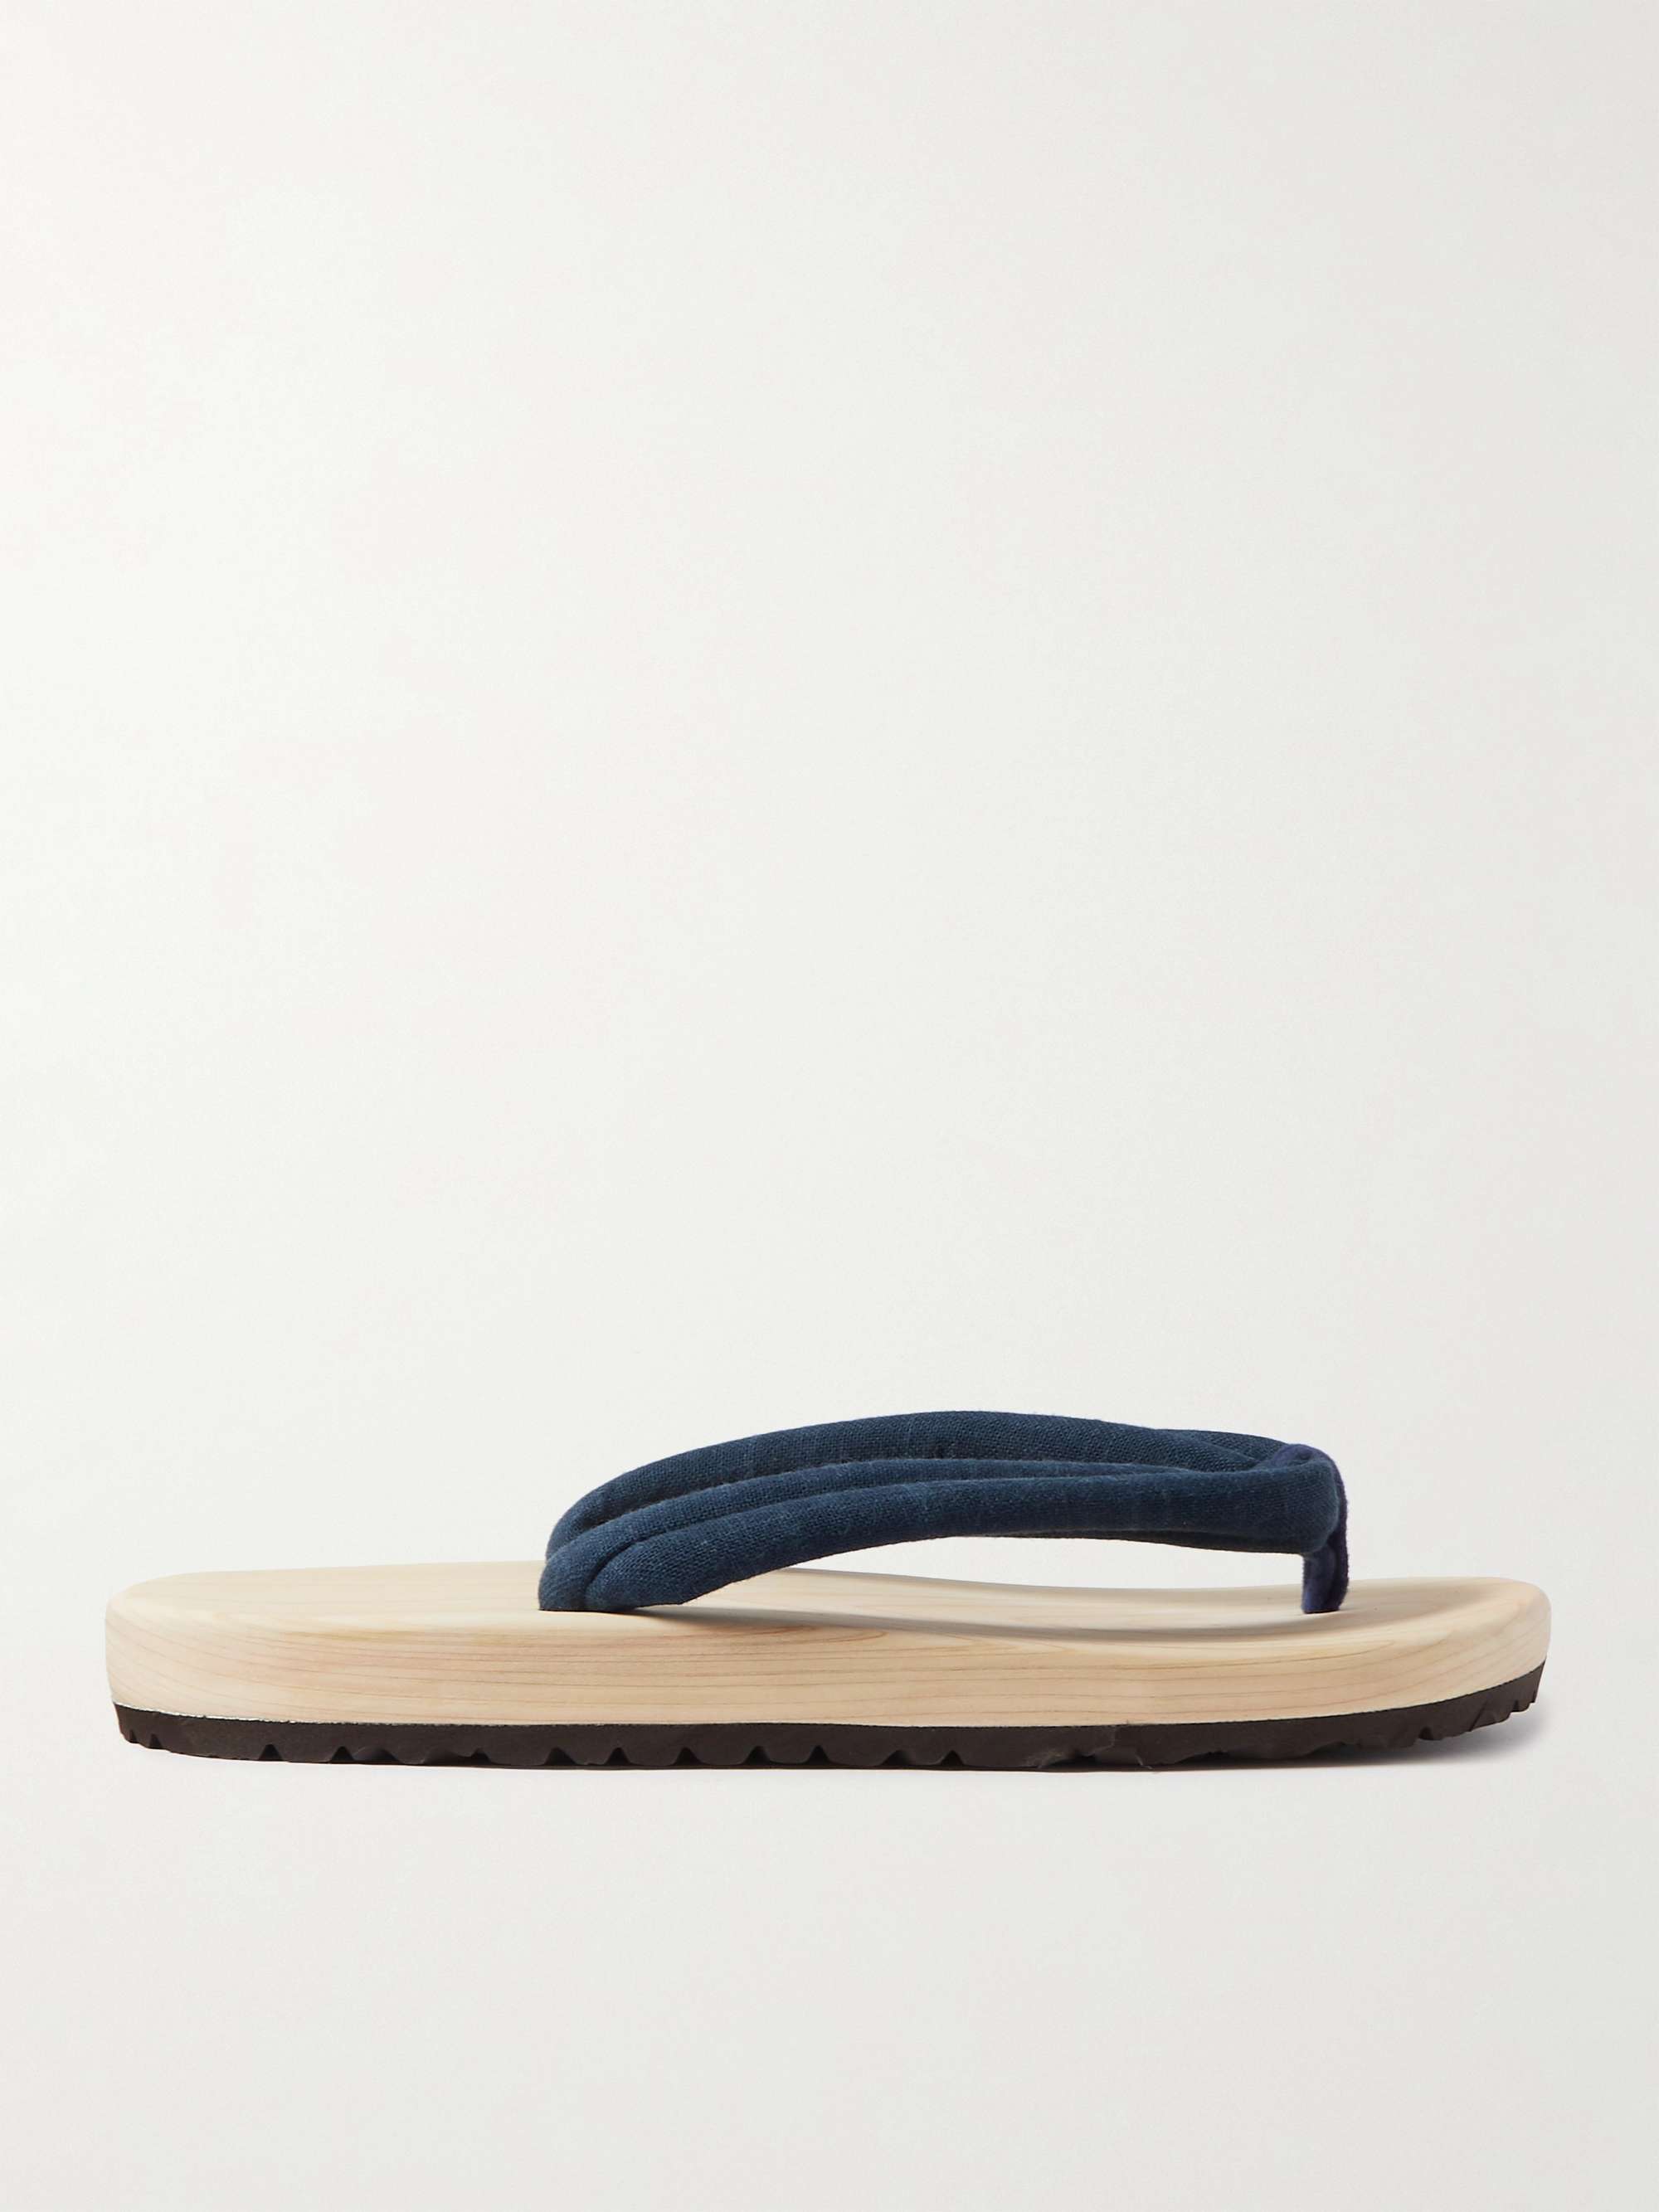 BY JAPAN Wooden Sandals | MR PORTER